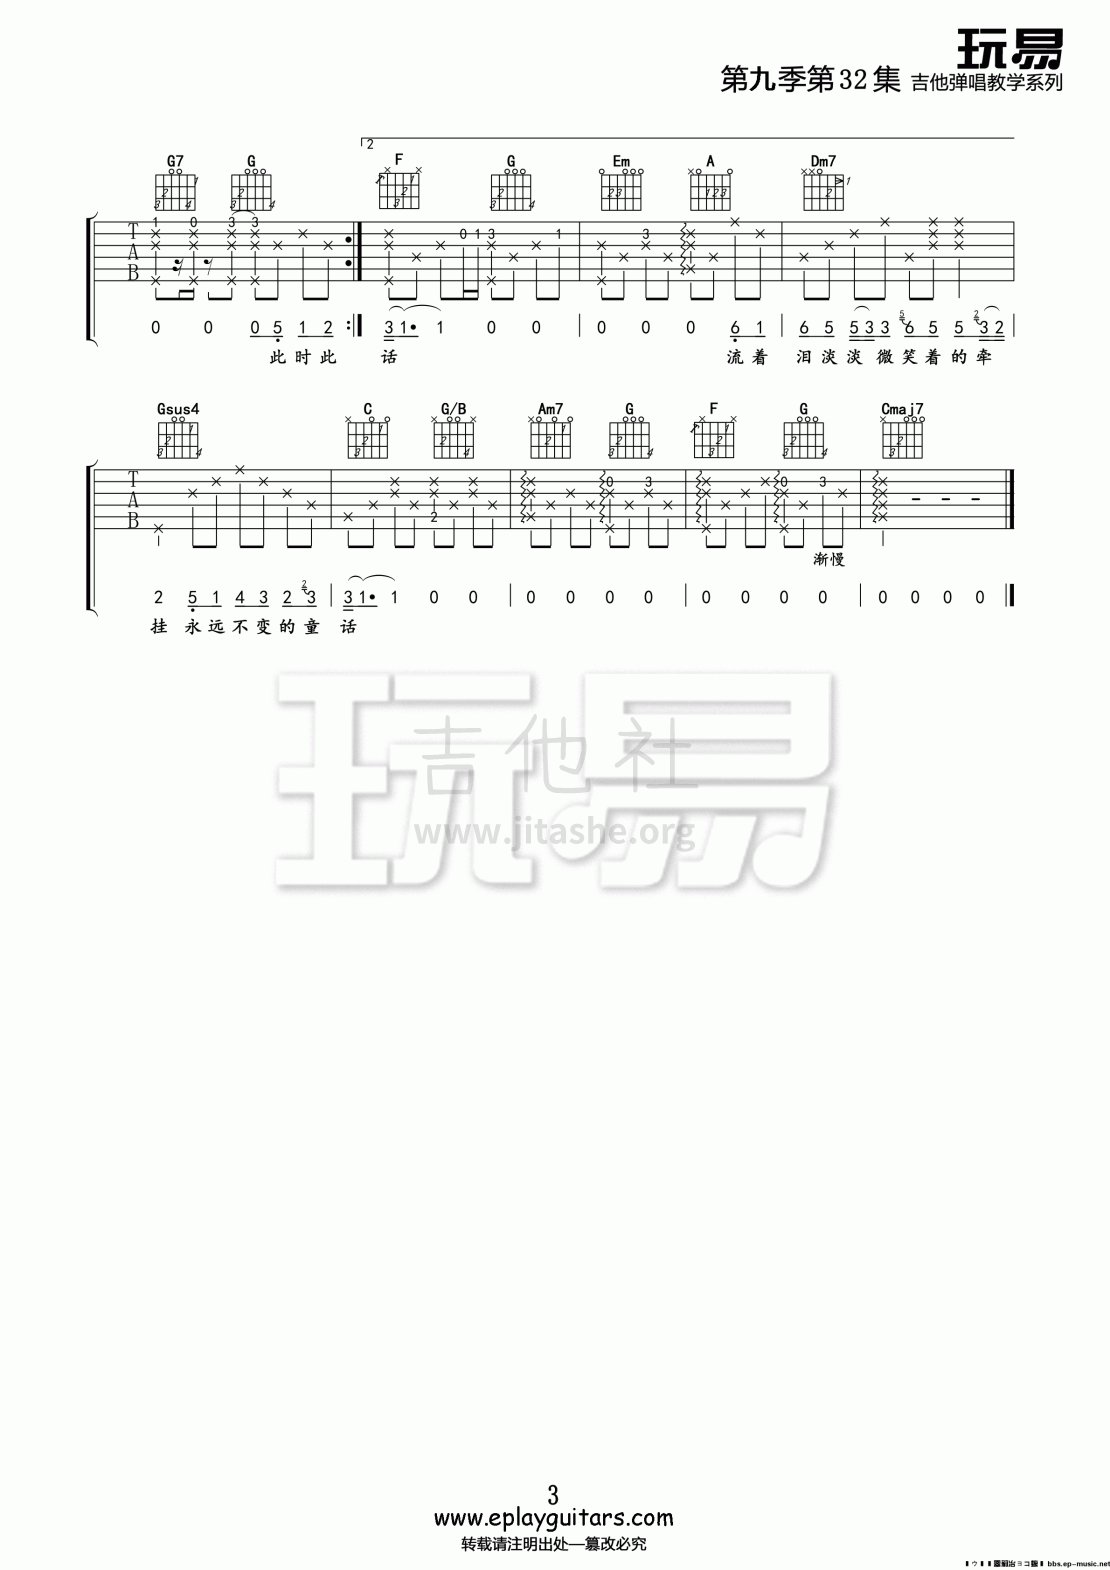 打印:流着泪微笑 玩易吉他谱吉他谱_SNH48(SNH Forty-eight / 上海48)_第九季第32集《流着泪微笑》03.gif